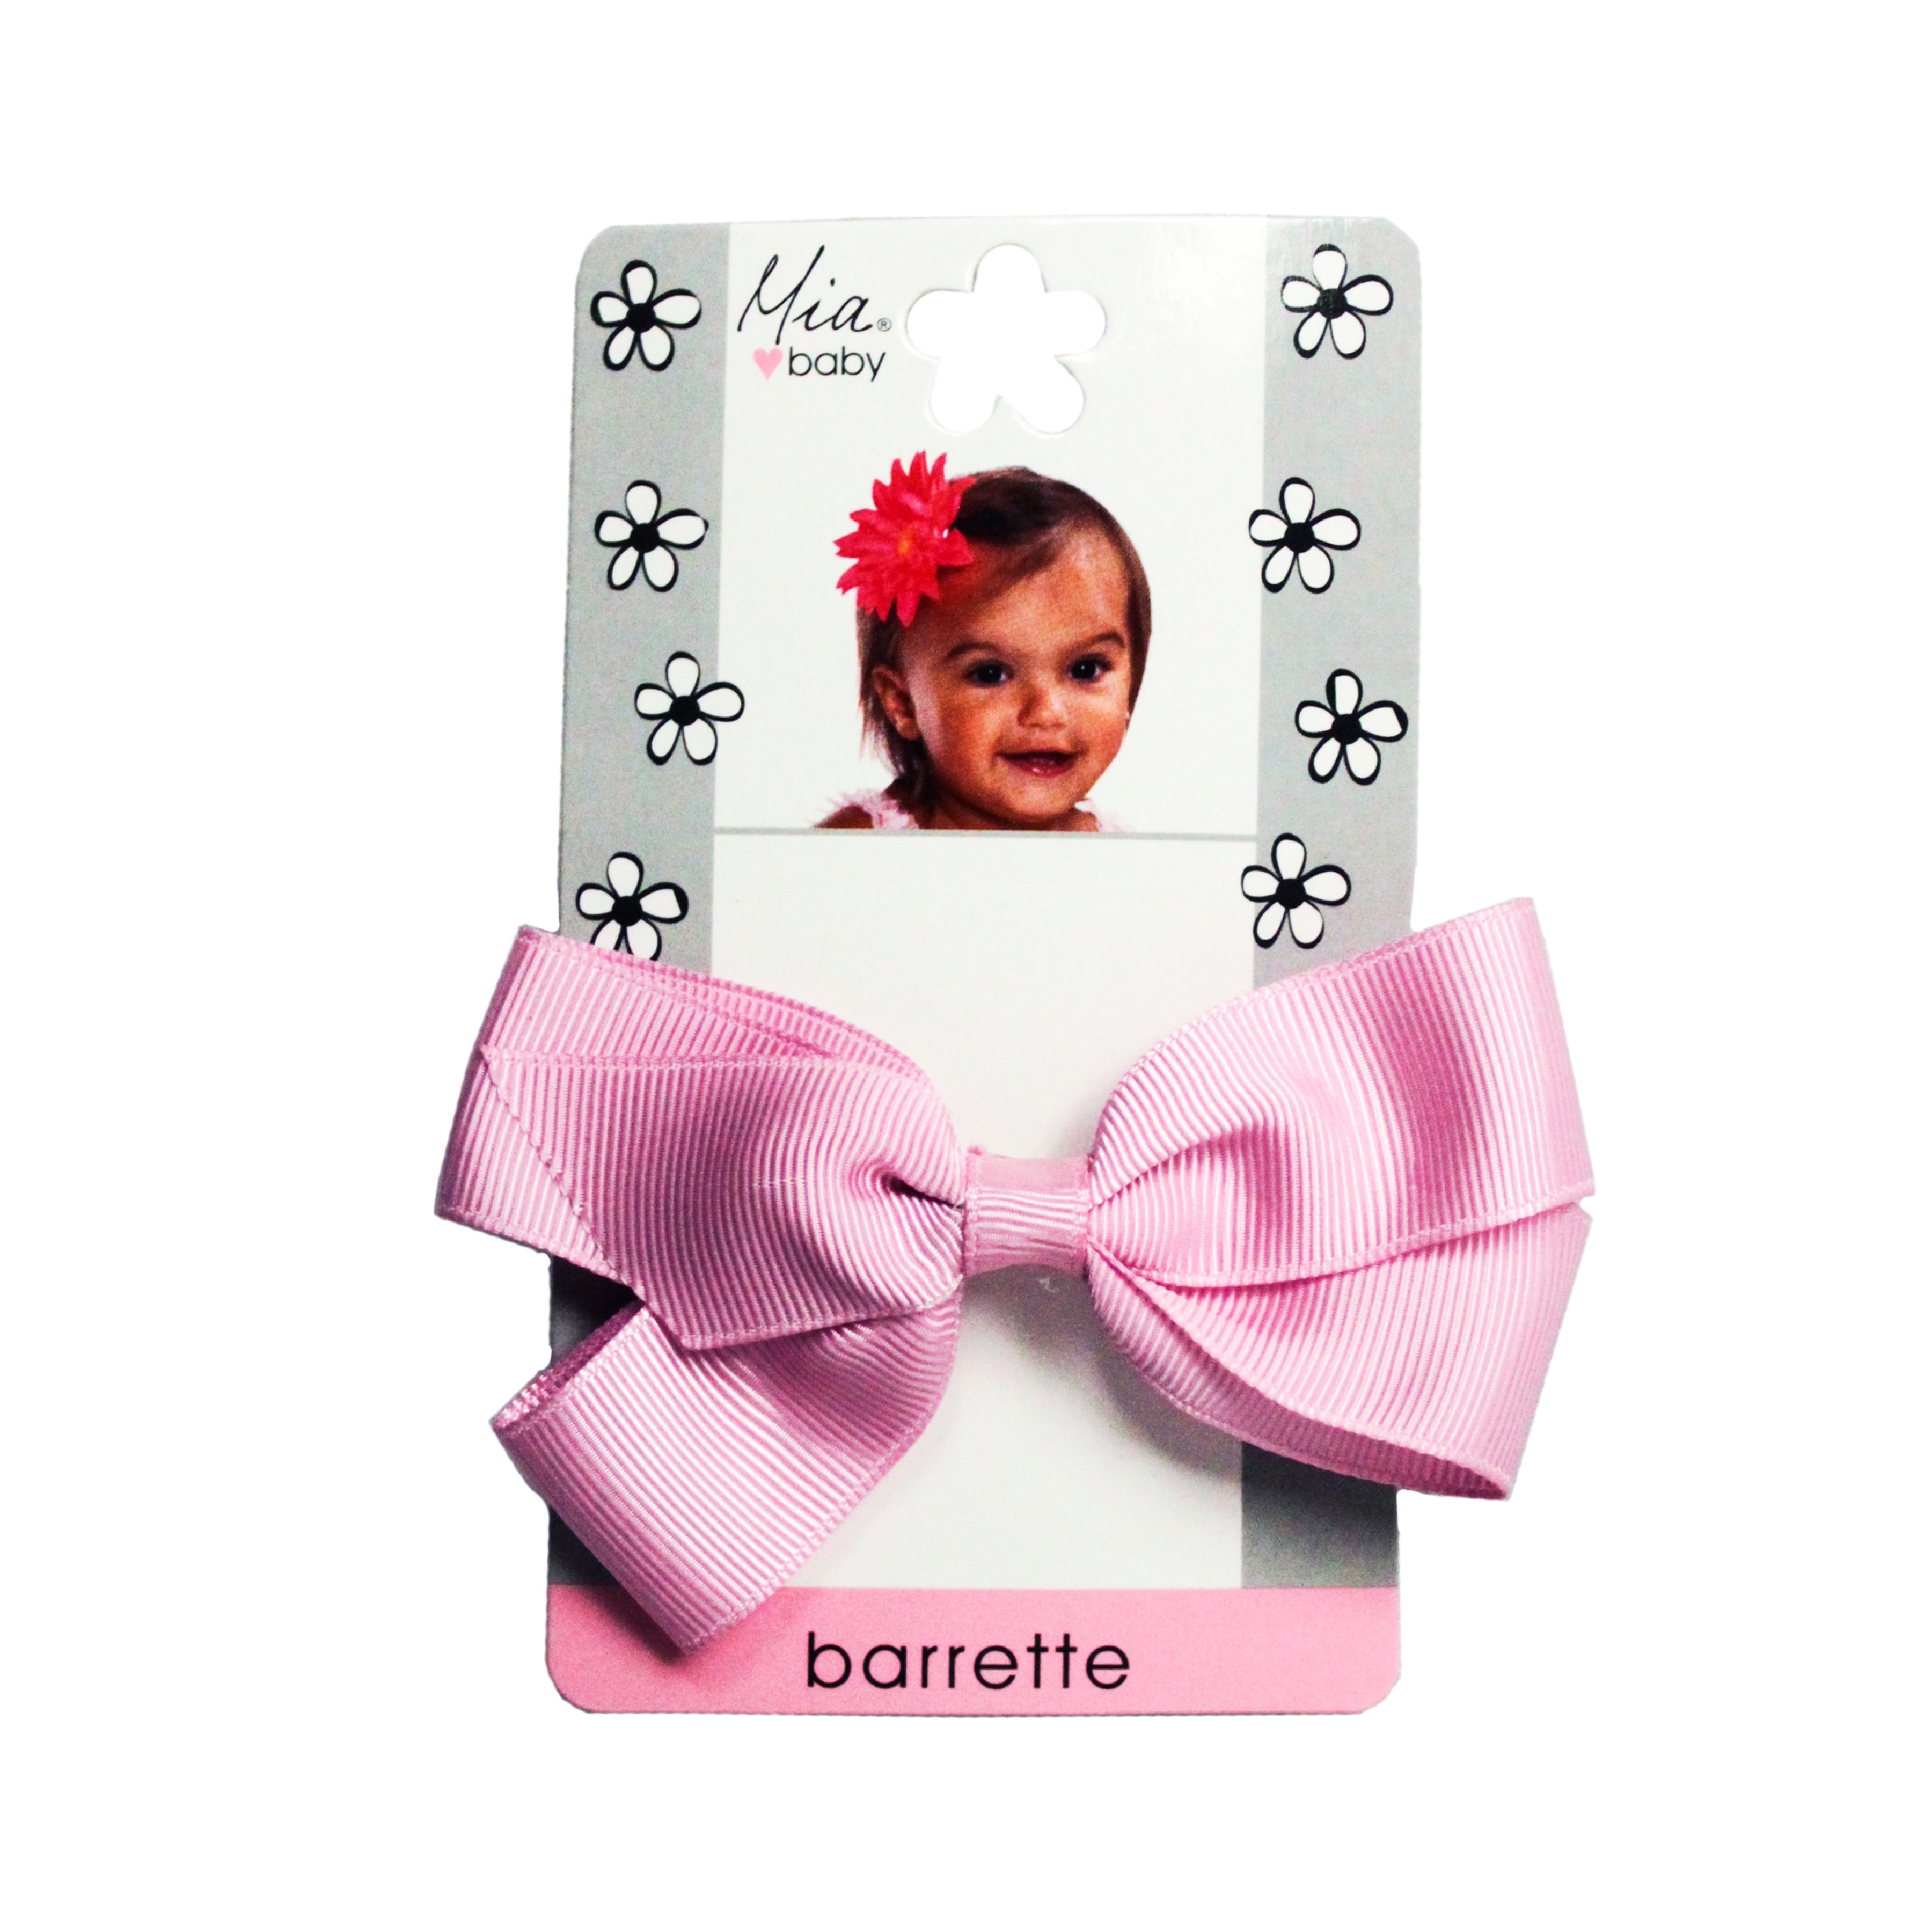 Mia® Baby Grosgrain Bow Barrette - pink color - shown on packaging - by #MiaKaminski #Mia #MiaBeauty #beauty #hair #HairAccessories #baby #girlhairaccessories #hairclips #hairbarrettes #barrette #lovethis #love #life #woman